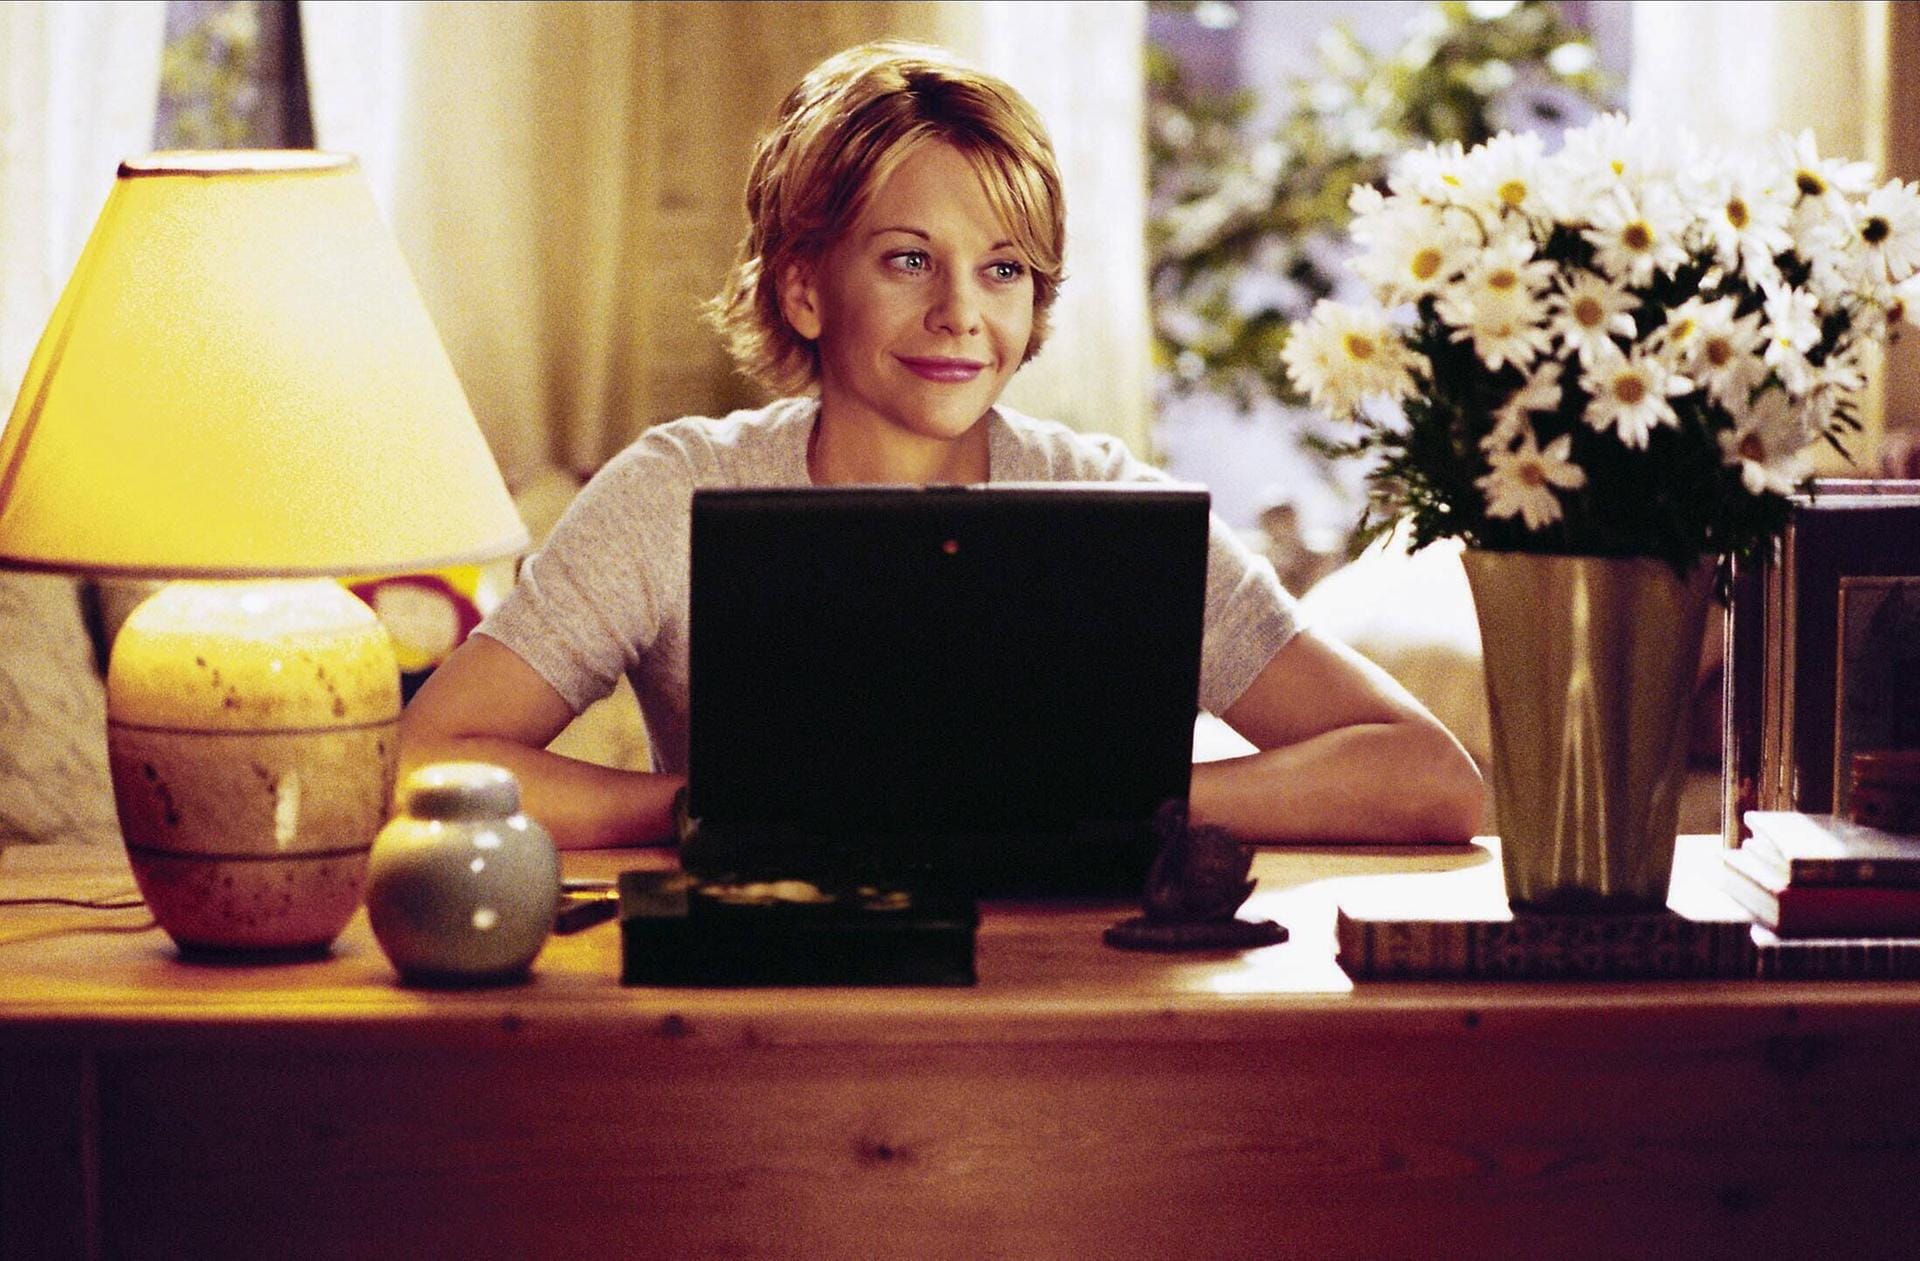 1998 spielte sie in "E-Mail für Dich" wieder an der Seite von Tom Hanks.